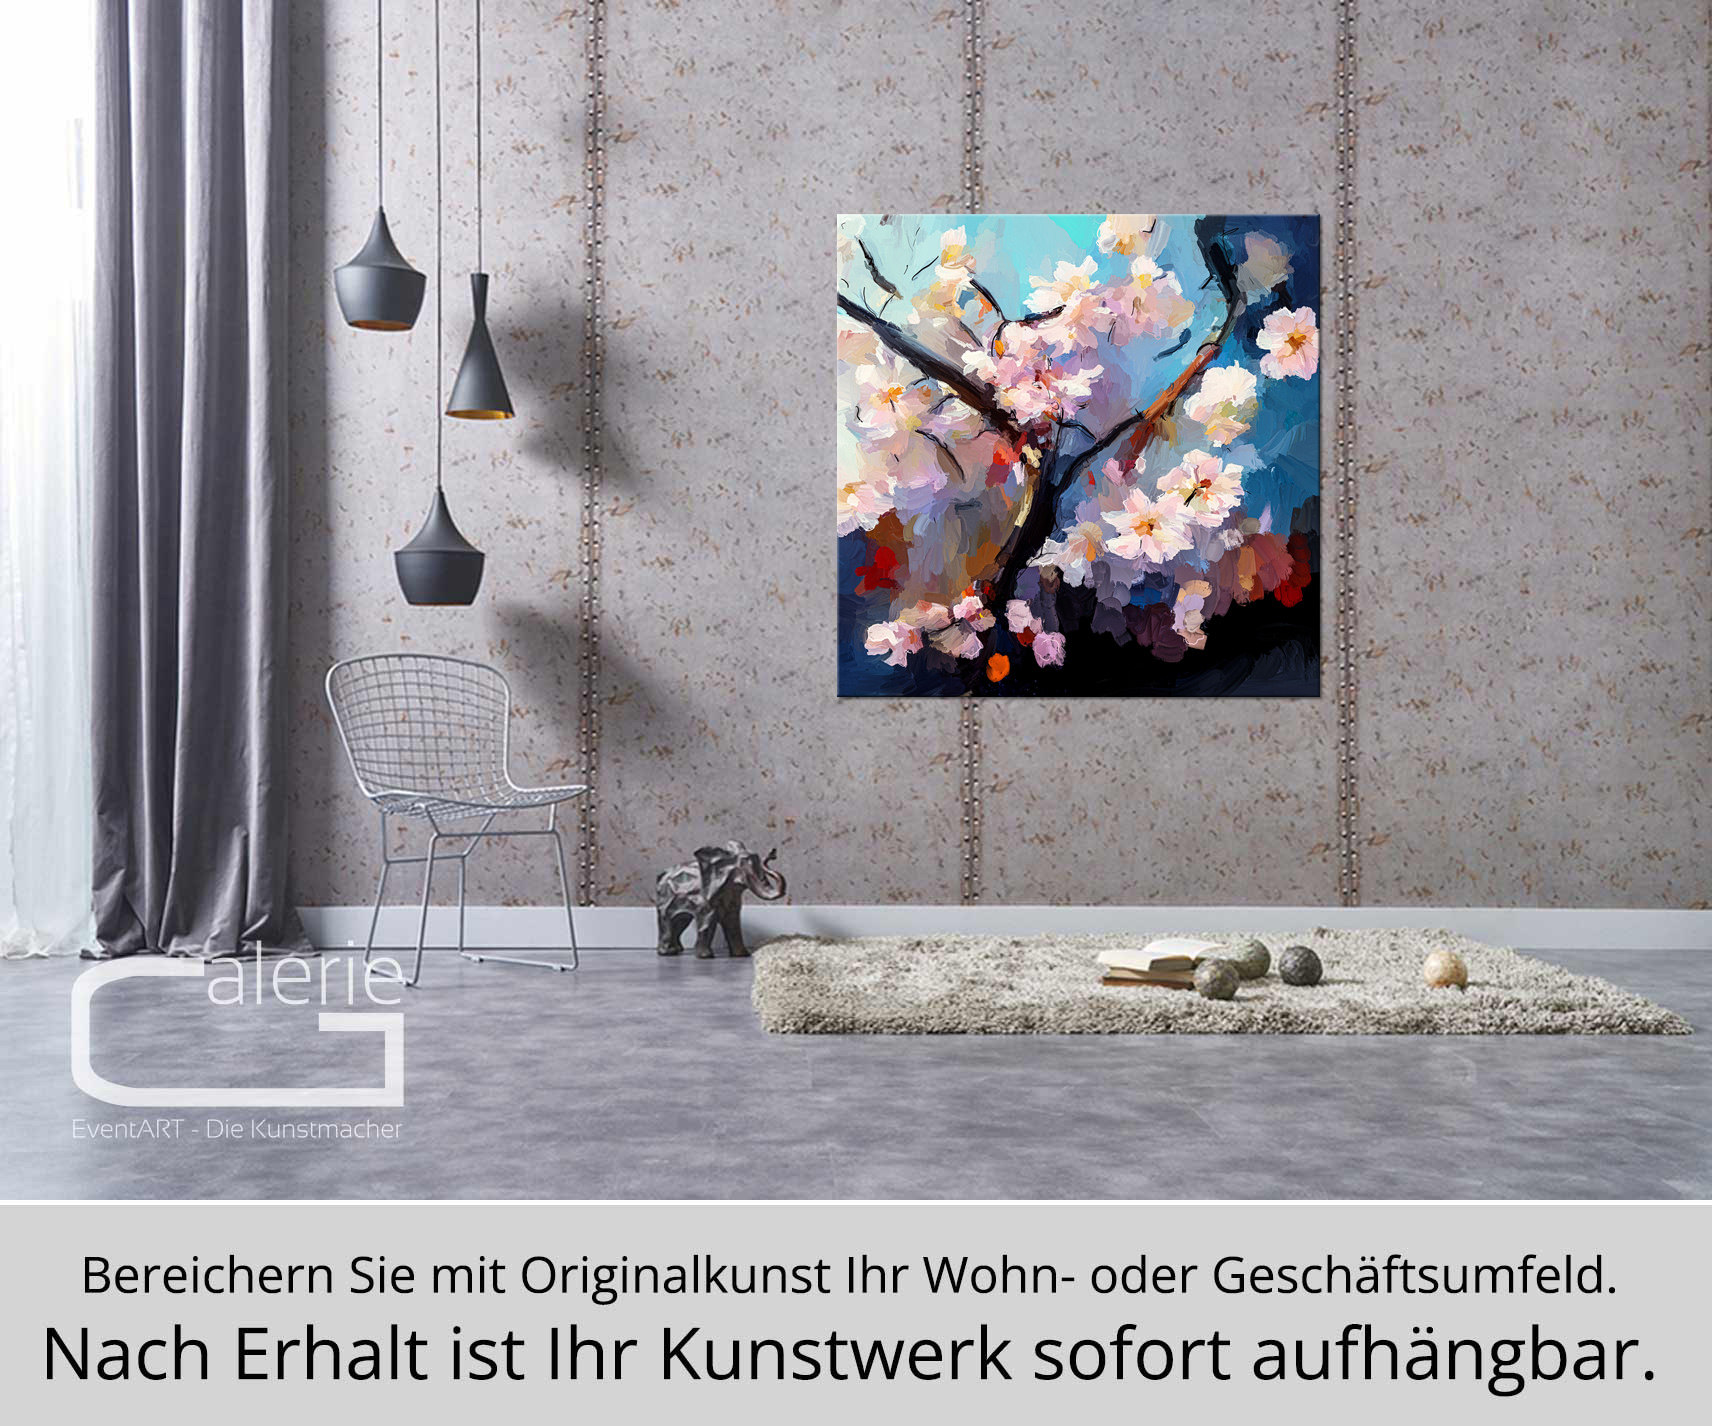 Moderne Pop Art: Kirschblüte, H. Mühlbauer-Gardemin, Original/serielles Unikat